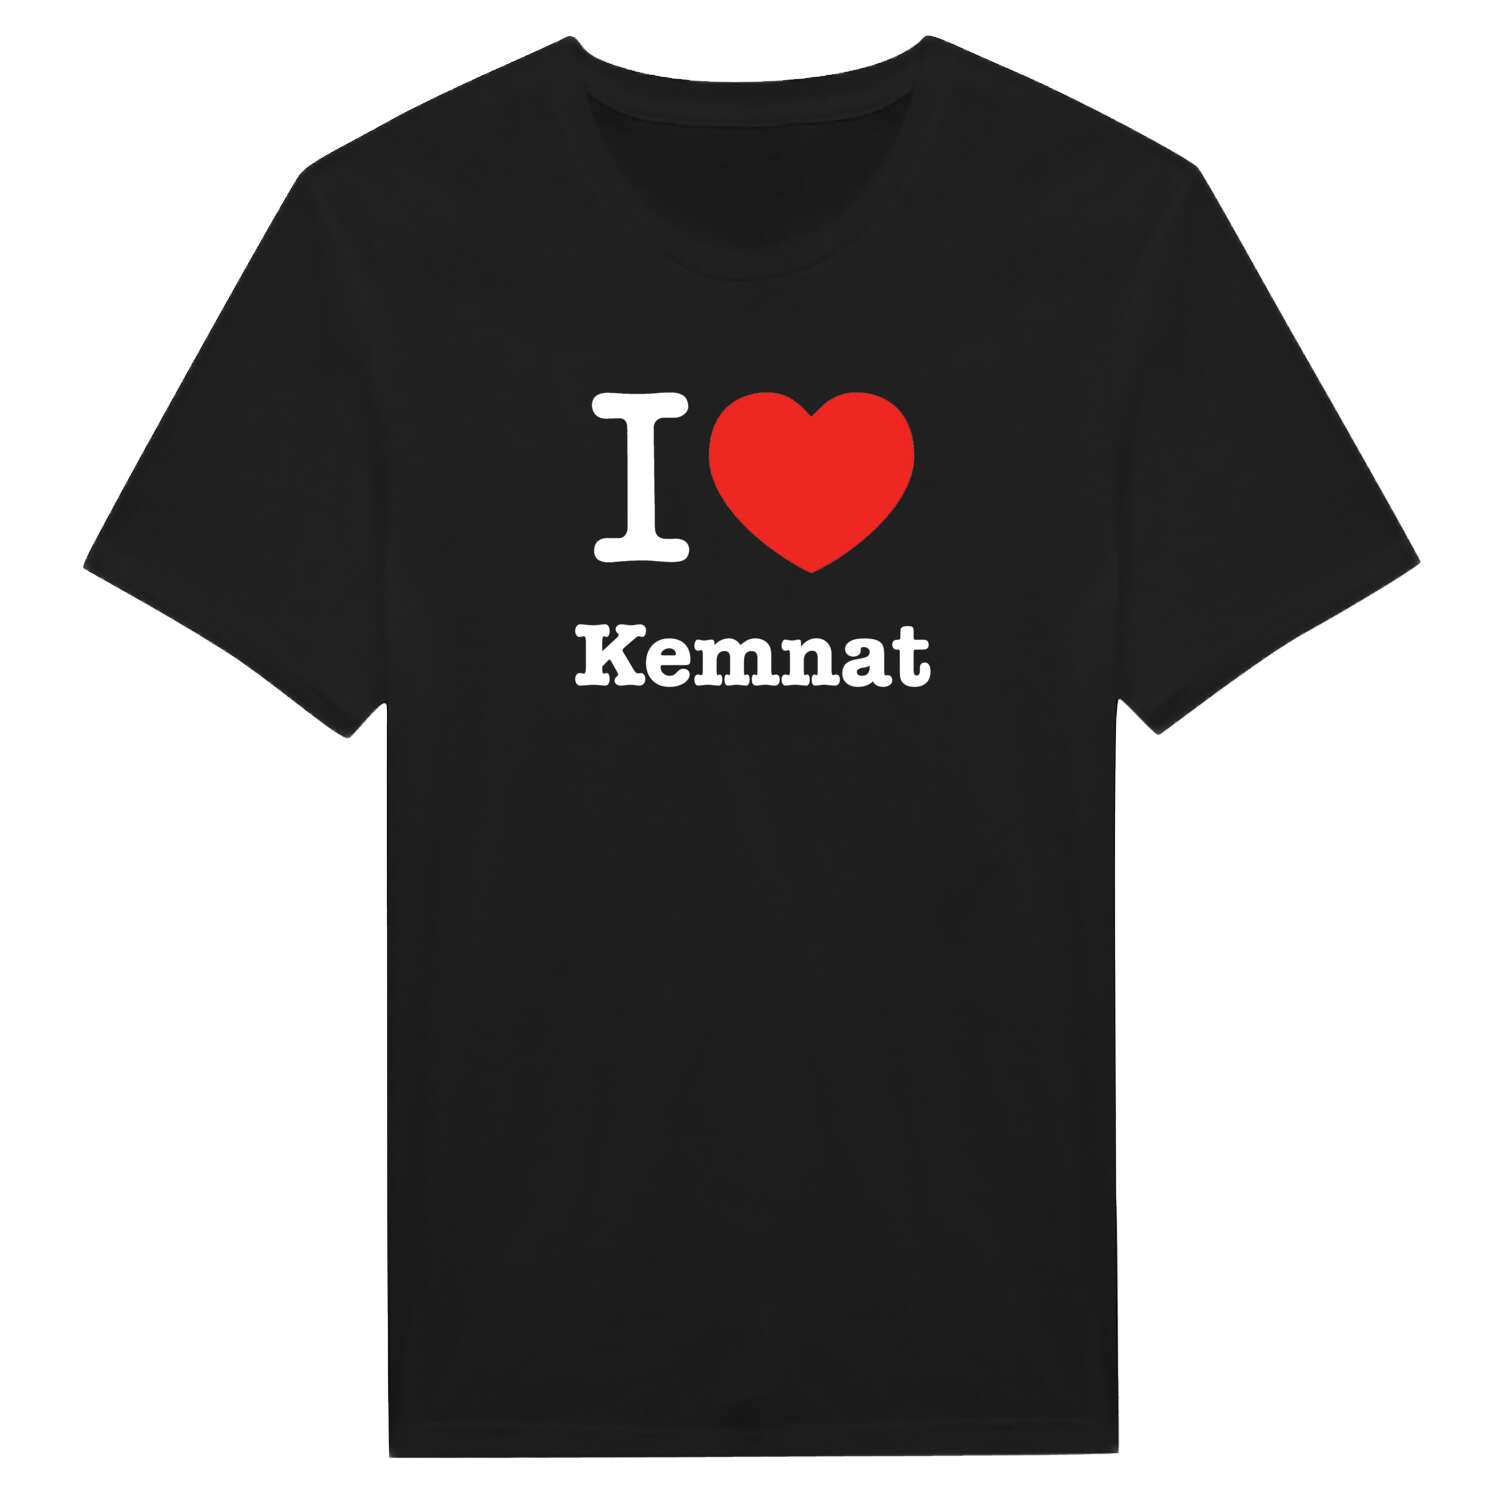 Kemnat T-Shirt »I love«